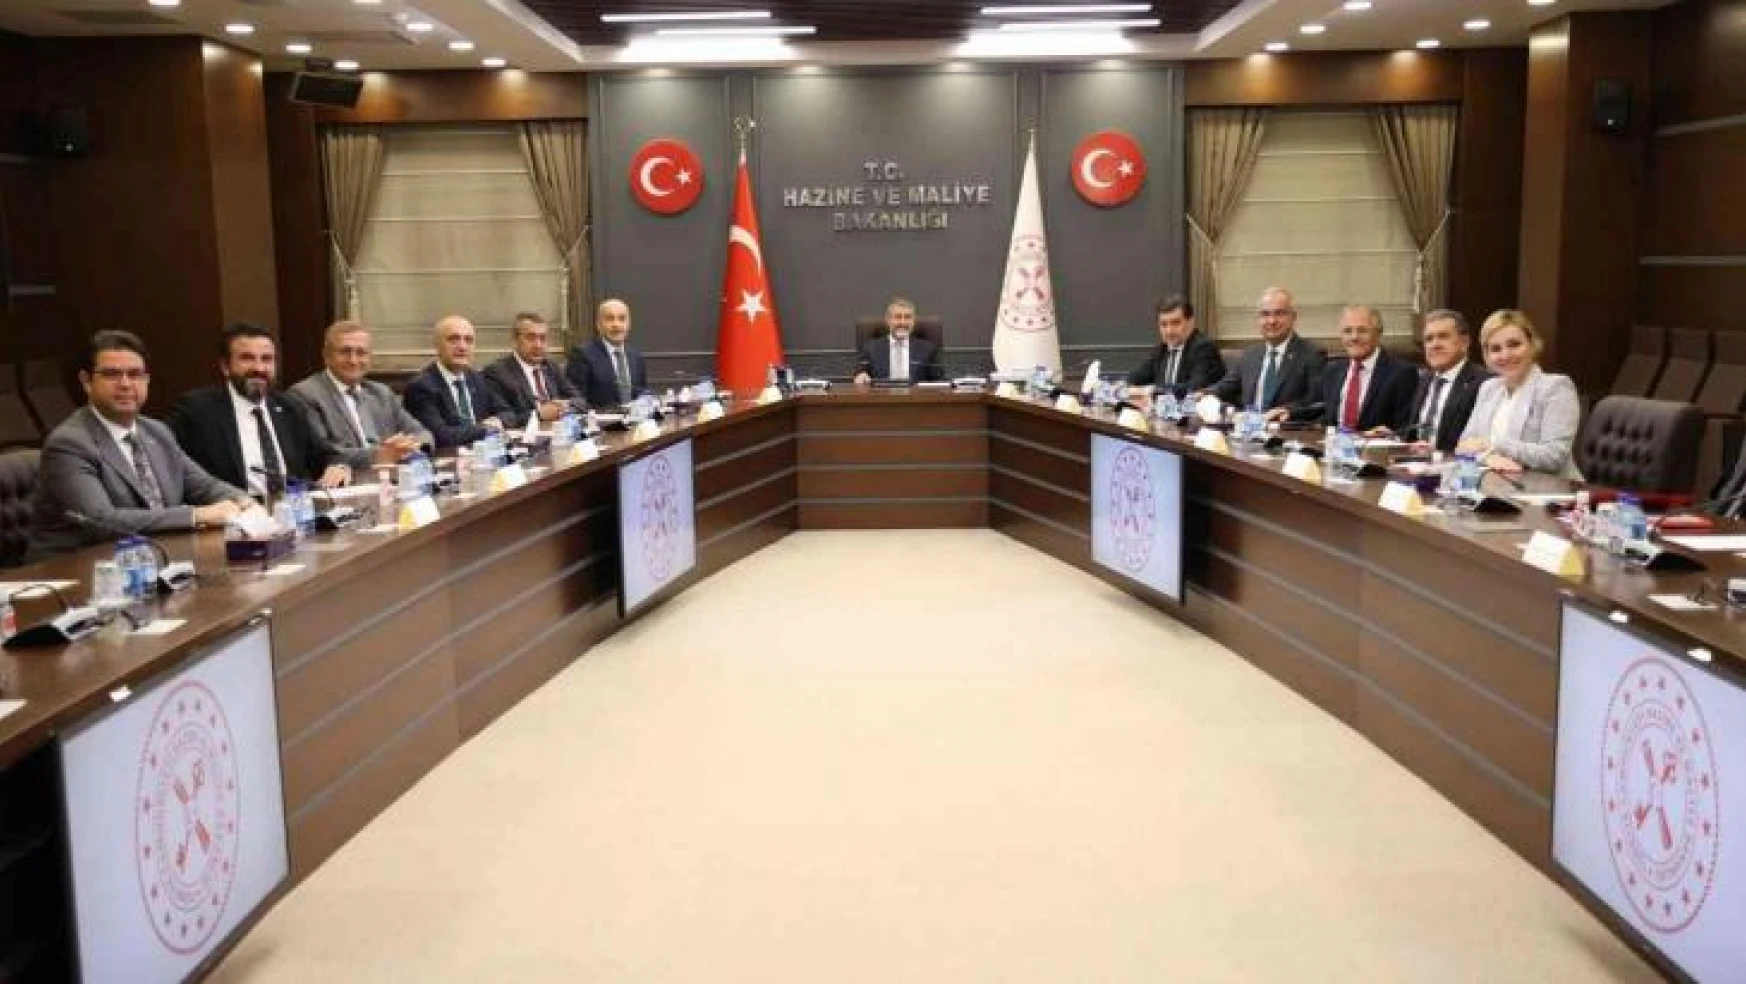 Bakan Nebati, TİM Başkanı Mustafa Gültepe ile görüştü